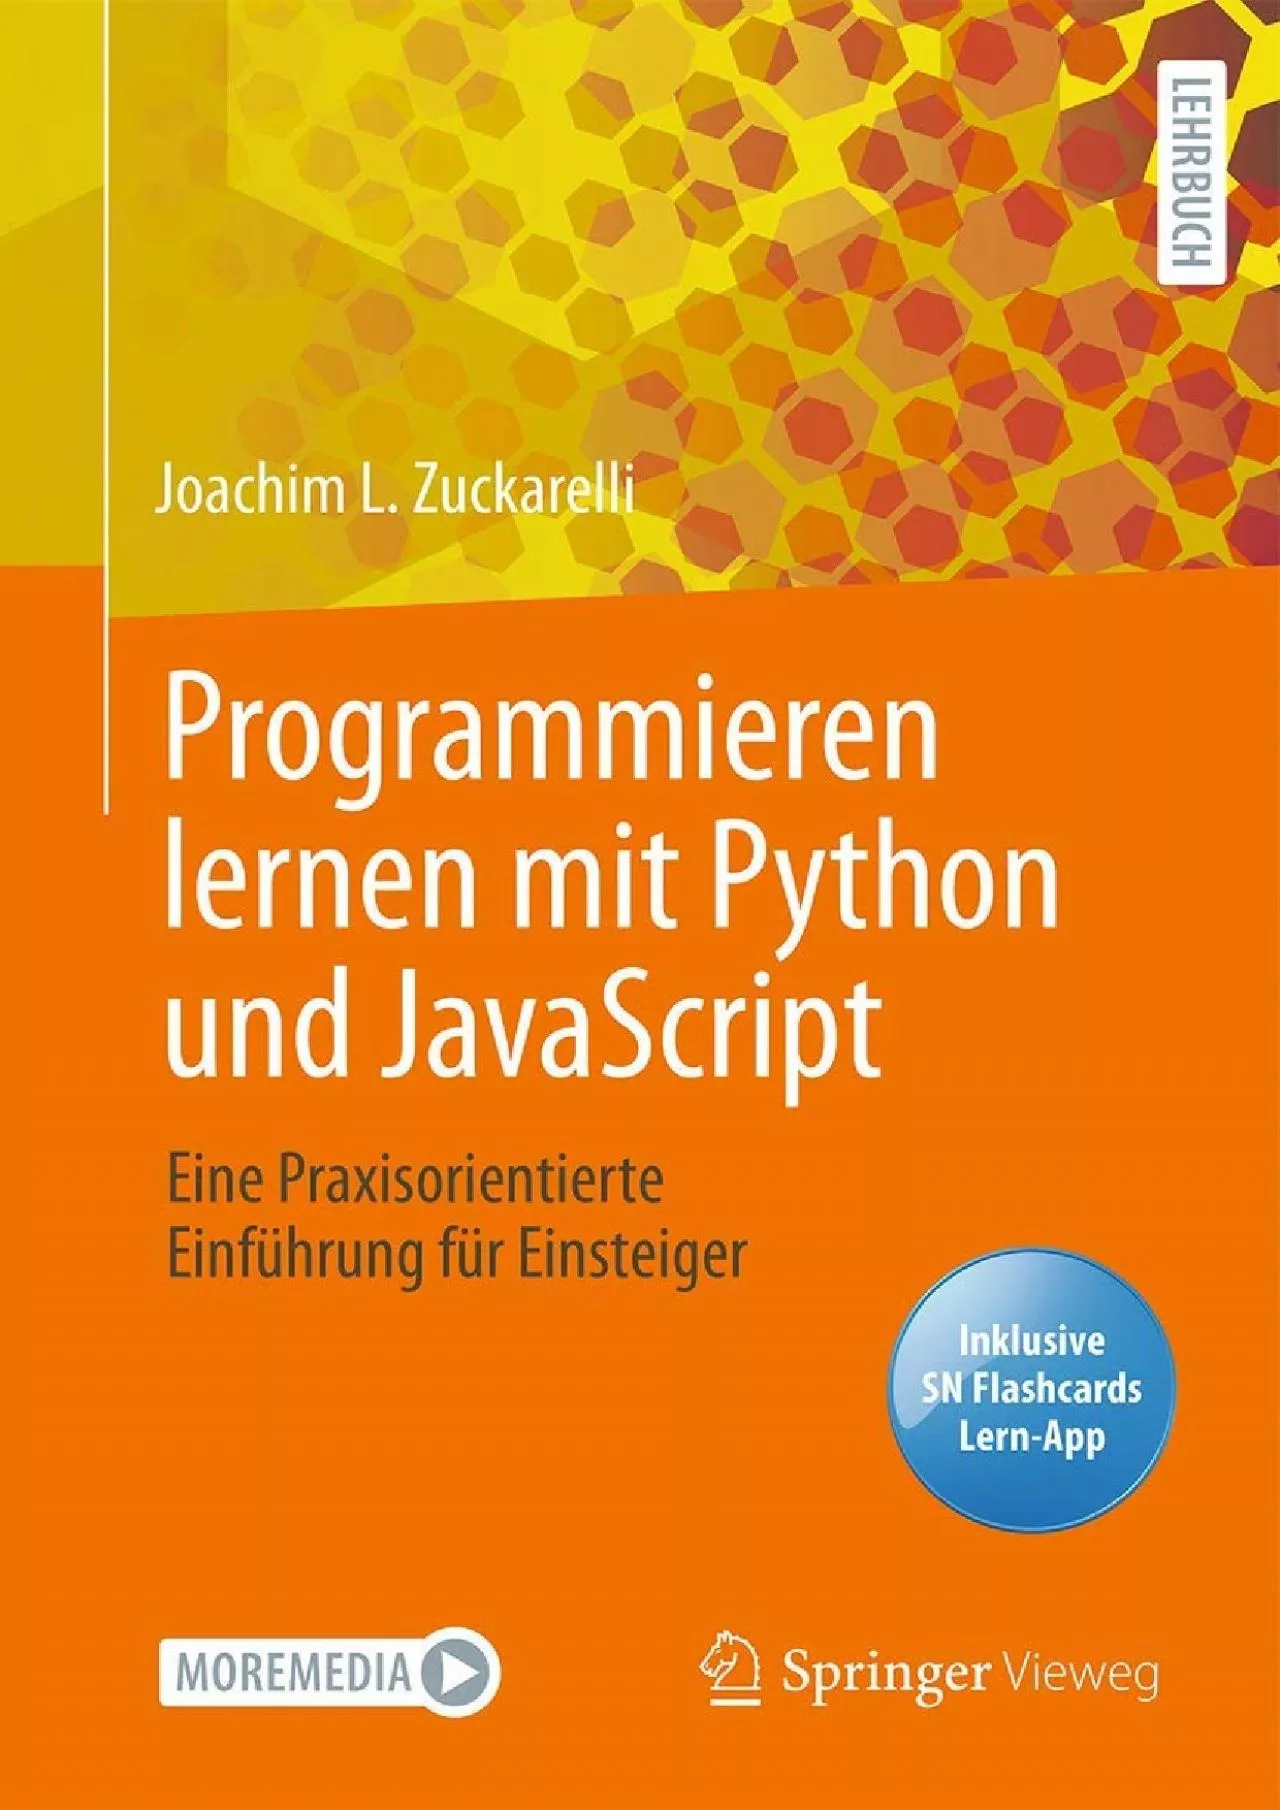 [BEST]-Programmieren lernen mit Python und JavaScript: Eine praxisorientierte Einführung